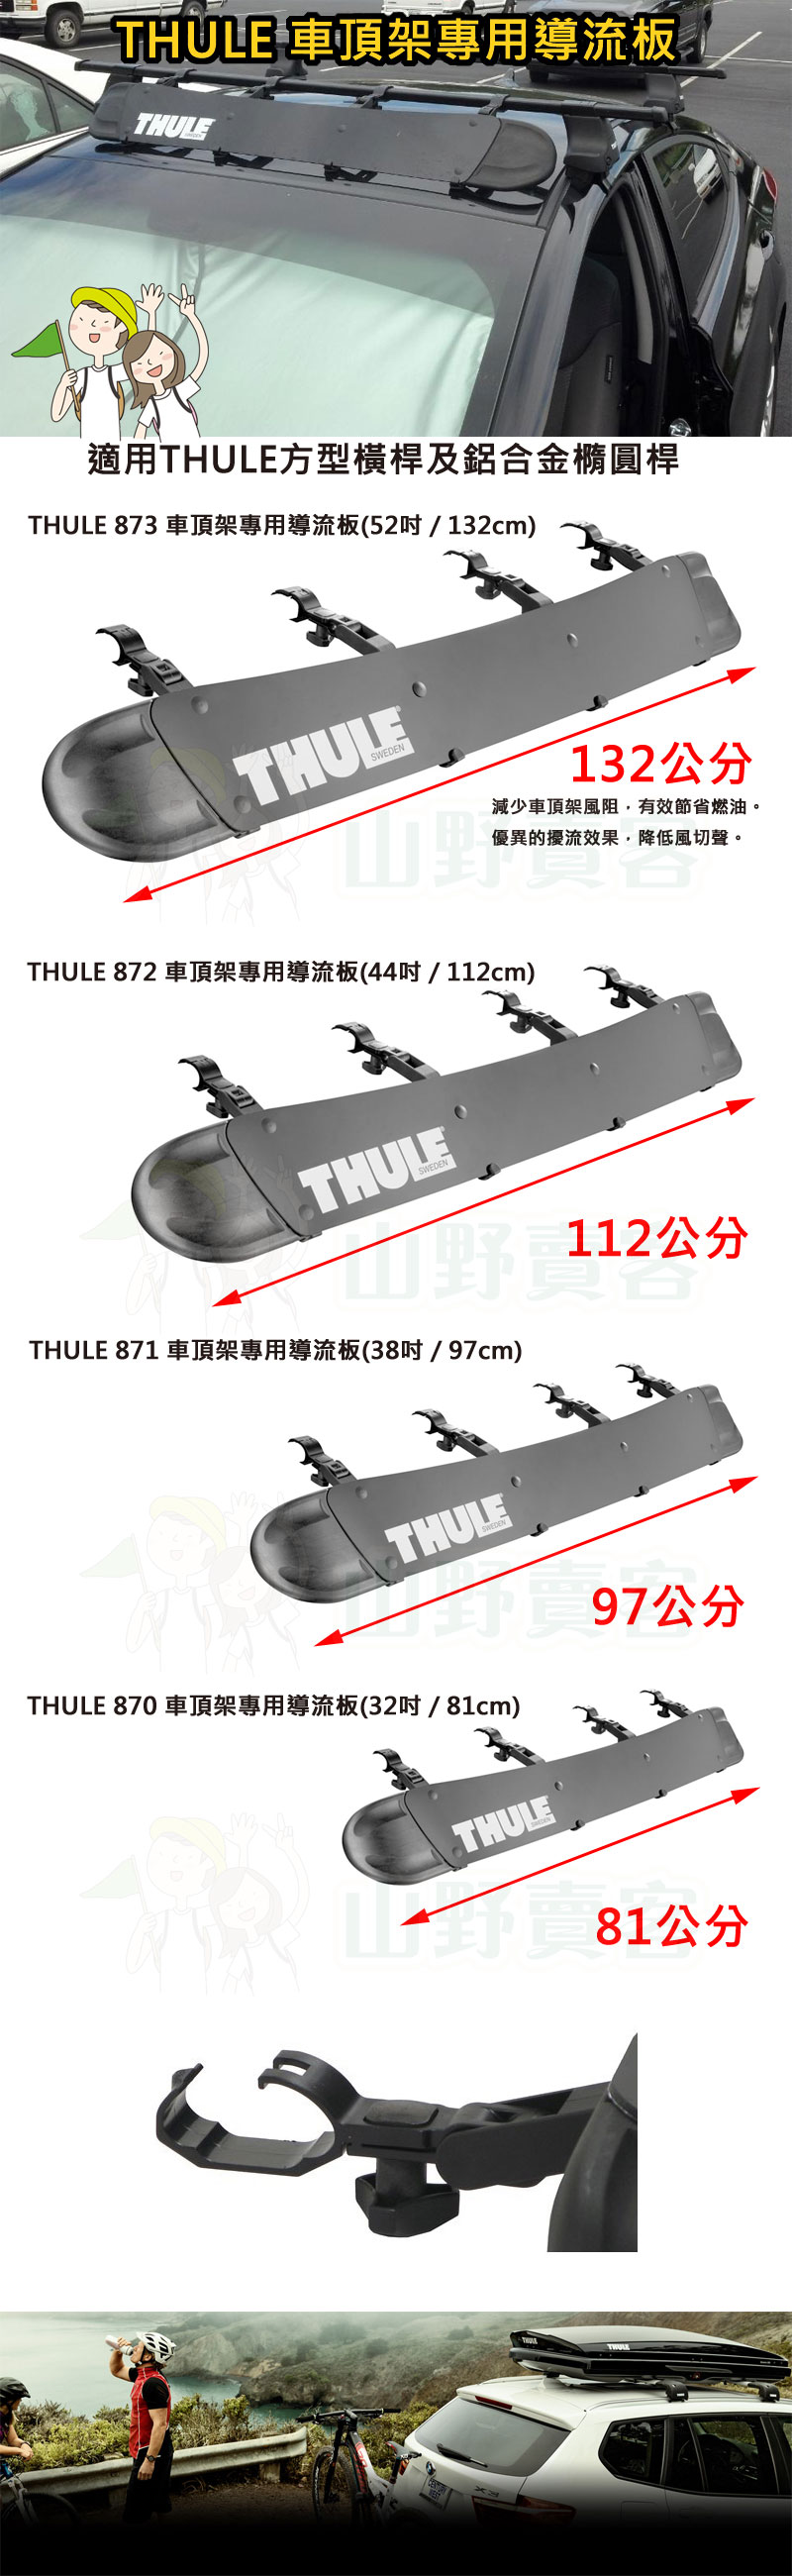 Thule 870 都樂 車頂架專用導流板 32"(32cm)